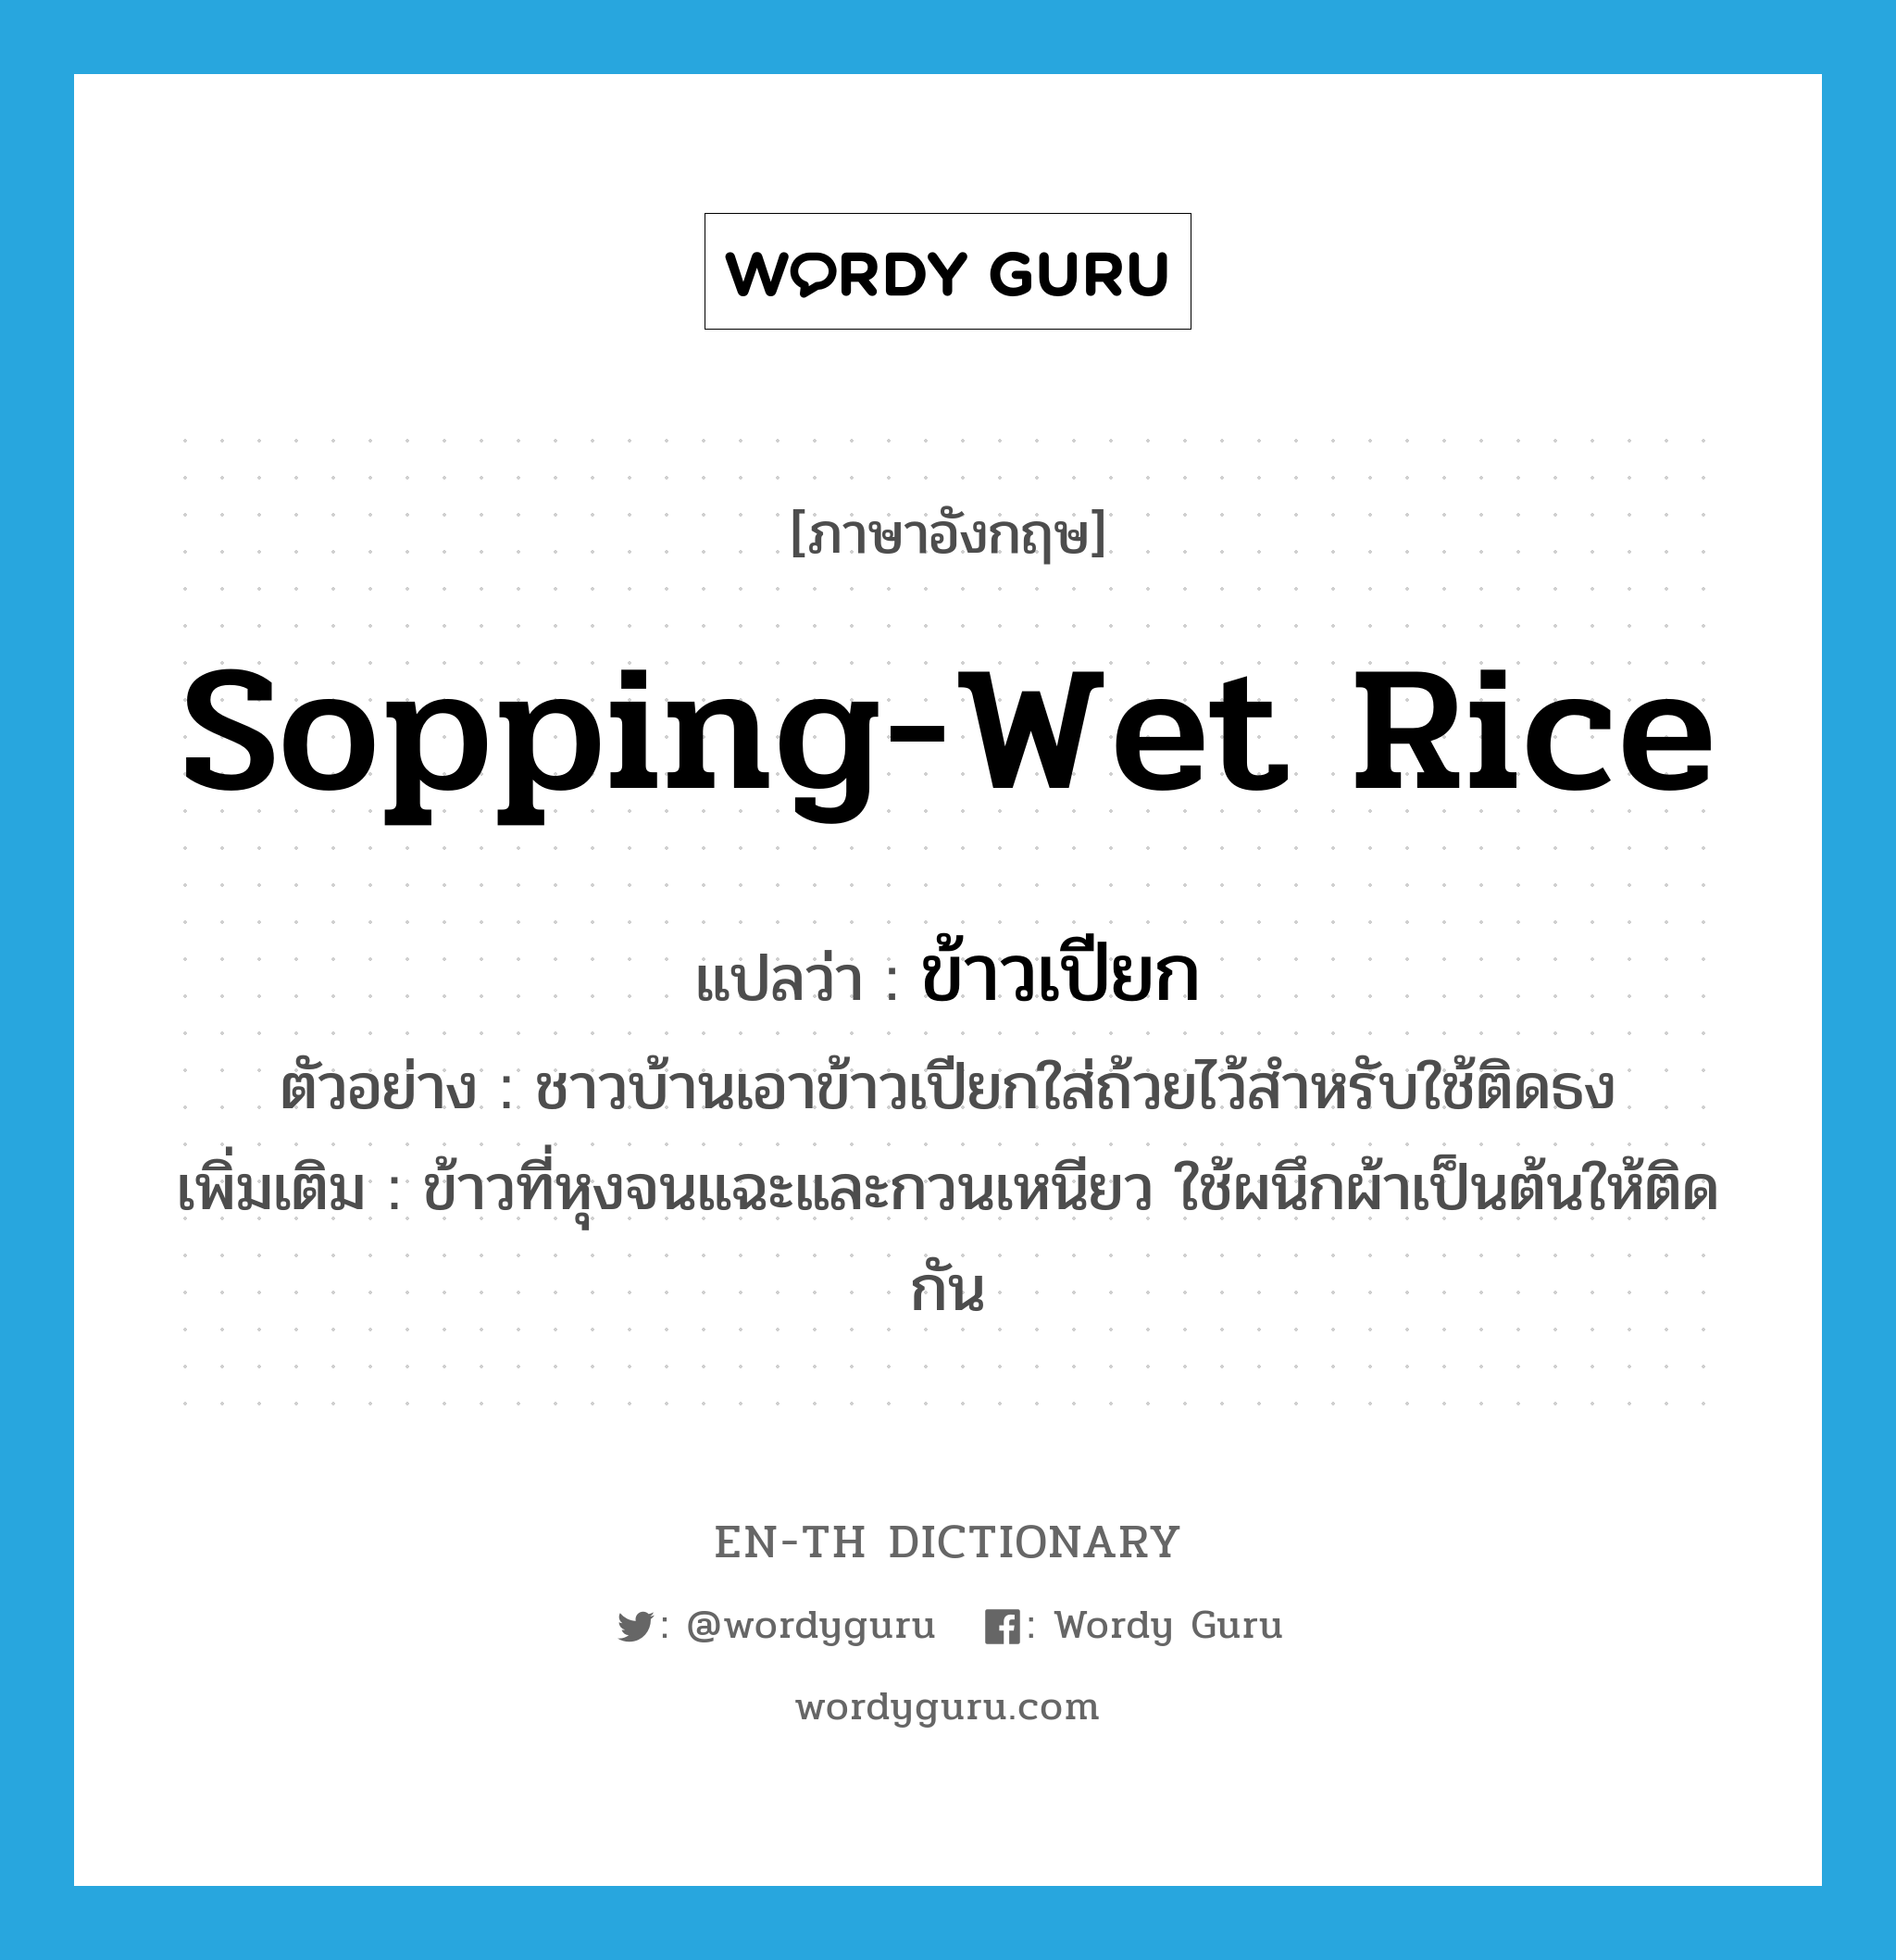 ข้าวเปียก ภาษาอังกฤษ?, คำศัพท์ภาษาอังกฤษ ข้าวเปียก แปลว่า sopping-wet rice ประเภท N ตัวอย่าง ชาวบ้านเอาข้าวเปียกใส่ถ้วยไว้สำหรับใช้ติดธง เพิ่มเติม ข้าวที่หุงจนแฉะและกวนเหนียว ใช้ผนึกผ้าเป็นต้นให้ติดกัน หมวด N